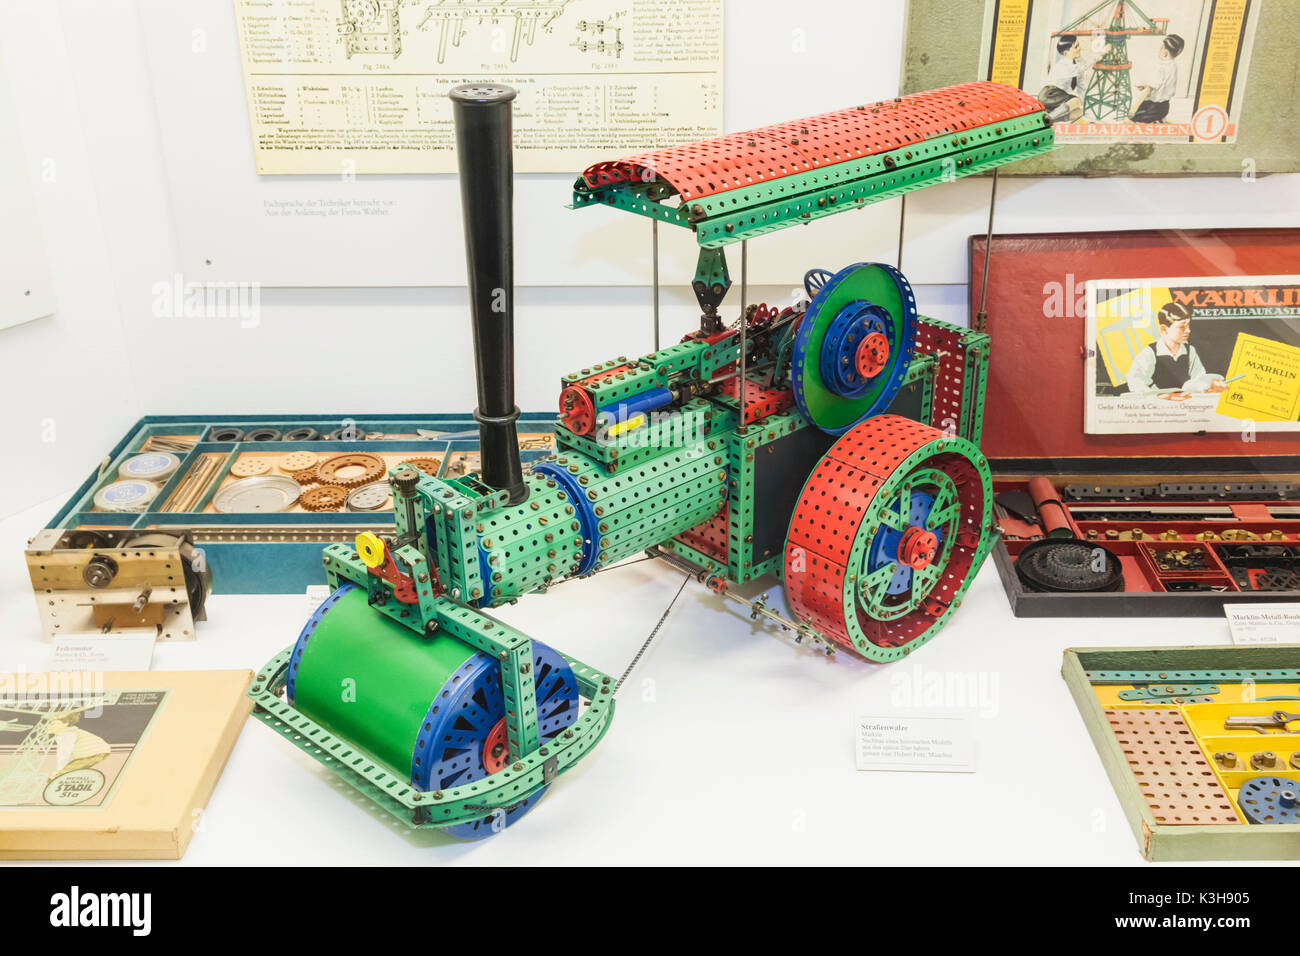 Germany, Bavaria, Munich, Deutsches Museum, exposition de jouets pour enfants Meccano Historique Banque D'Images